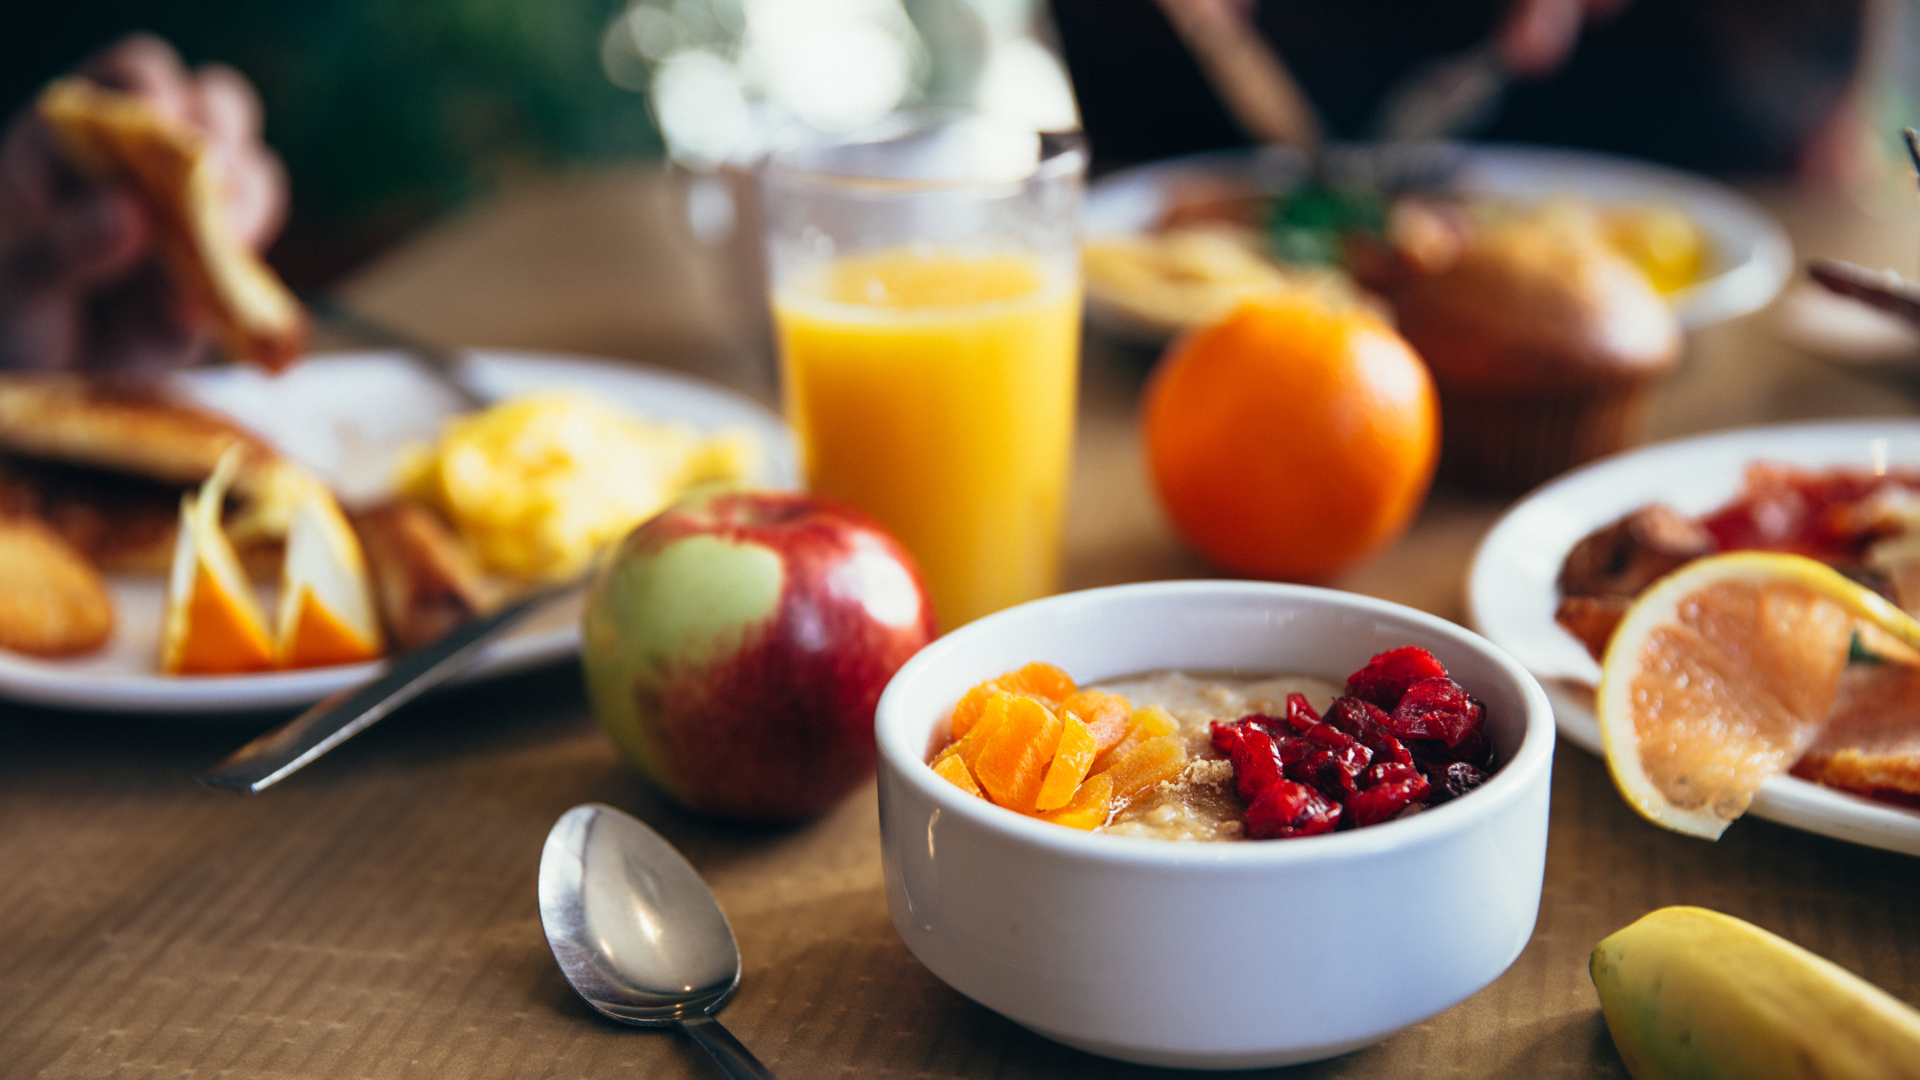 Desayuno fitness saludable con fruta, avena y proteína